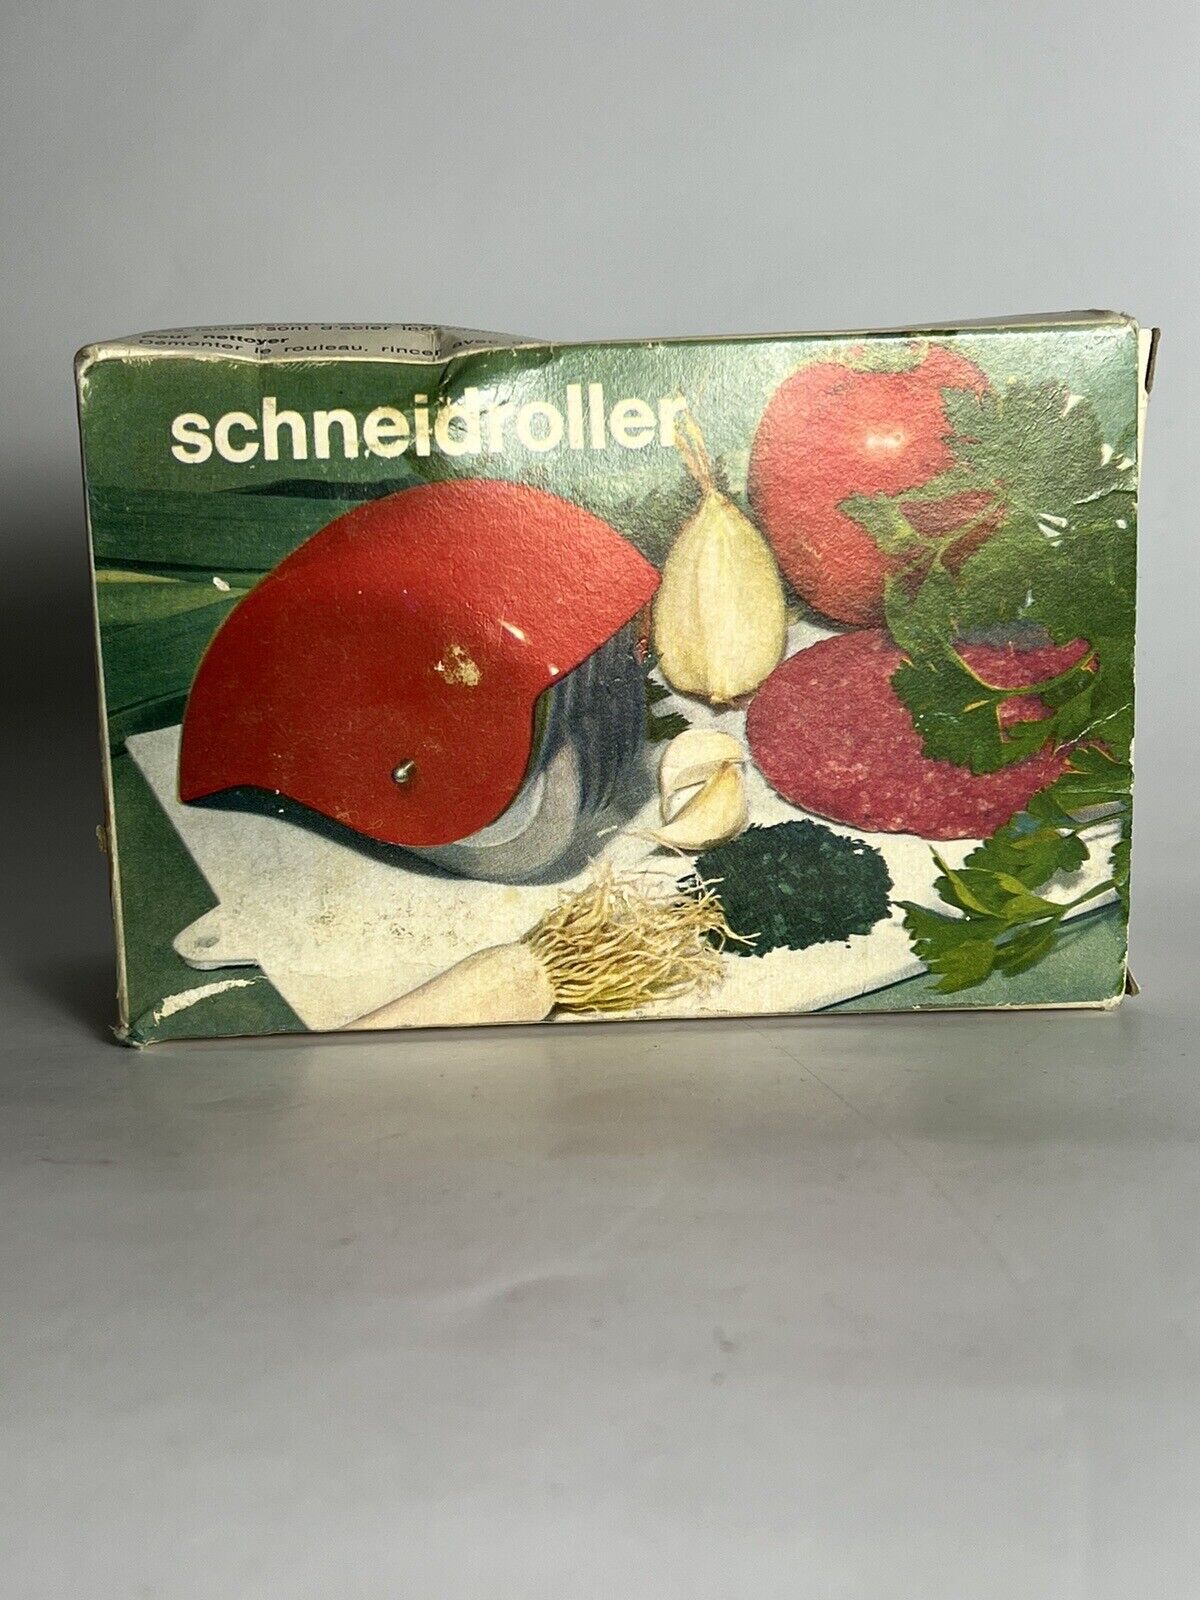 Ritter Schneidroller Universal Mincer Chopper Germany Vintage Kitchen Baking Box